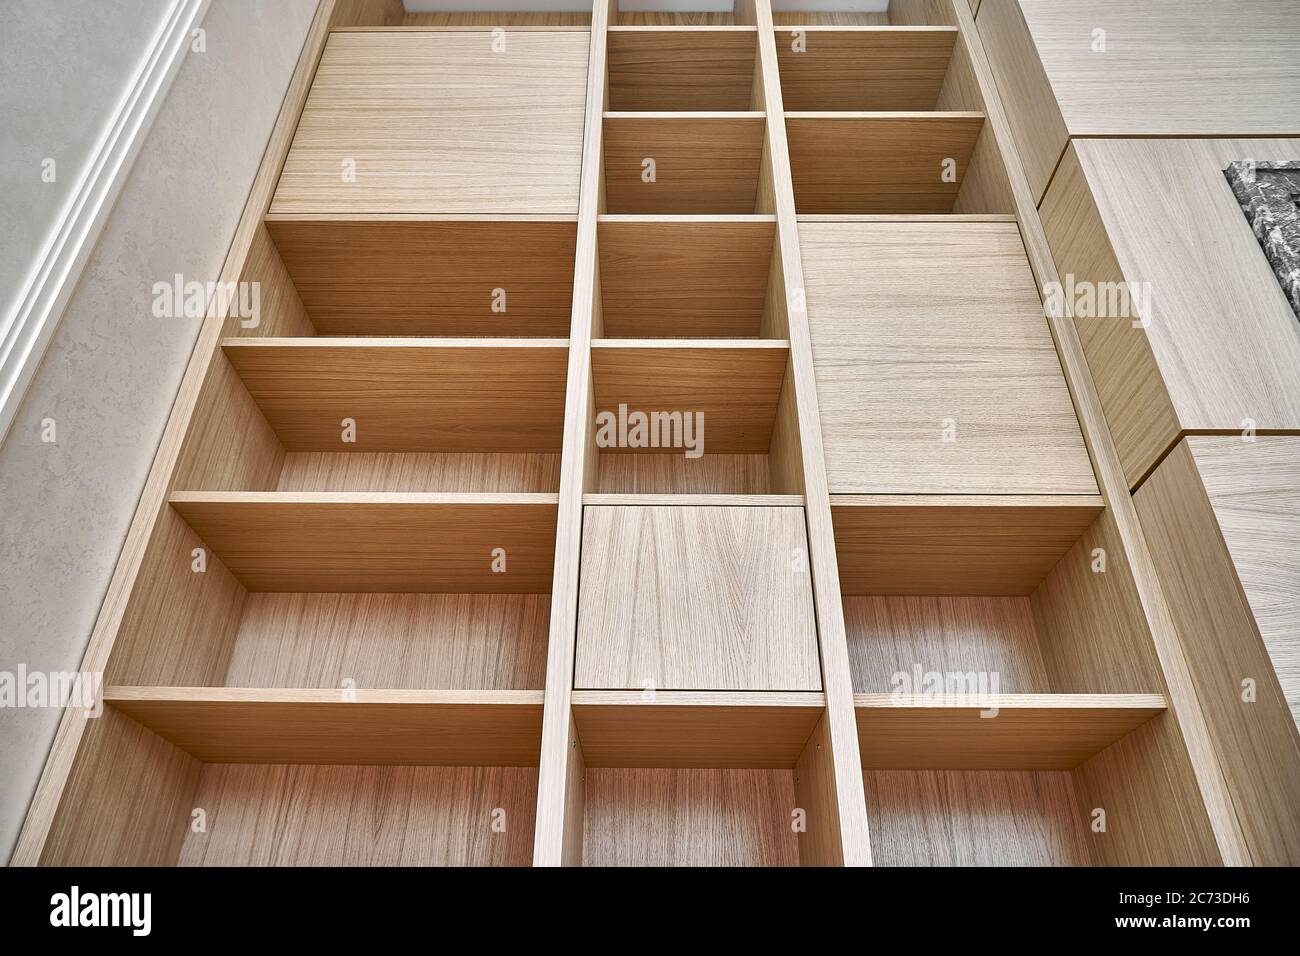 Bücherregale aus Holz. Holzbücherregale und Wandpaneele aus MDF furniert. Nahaufnahme Stockfoto